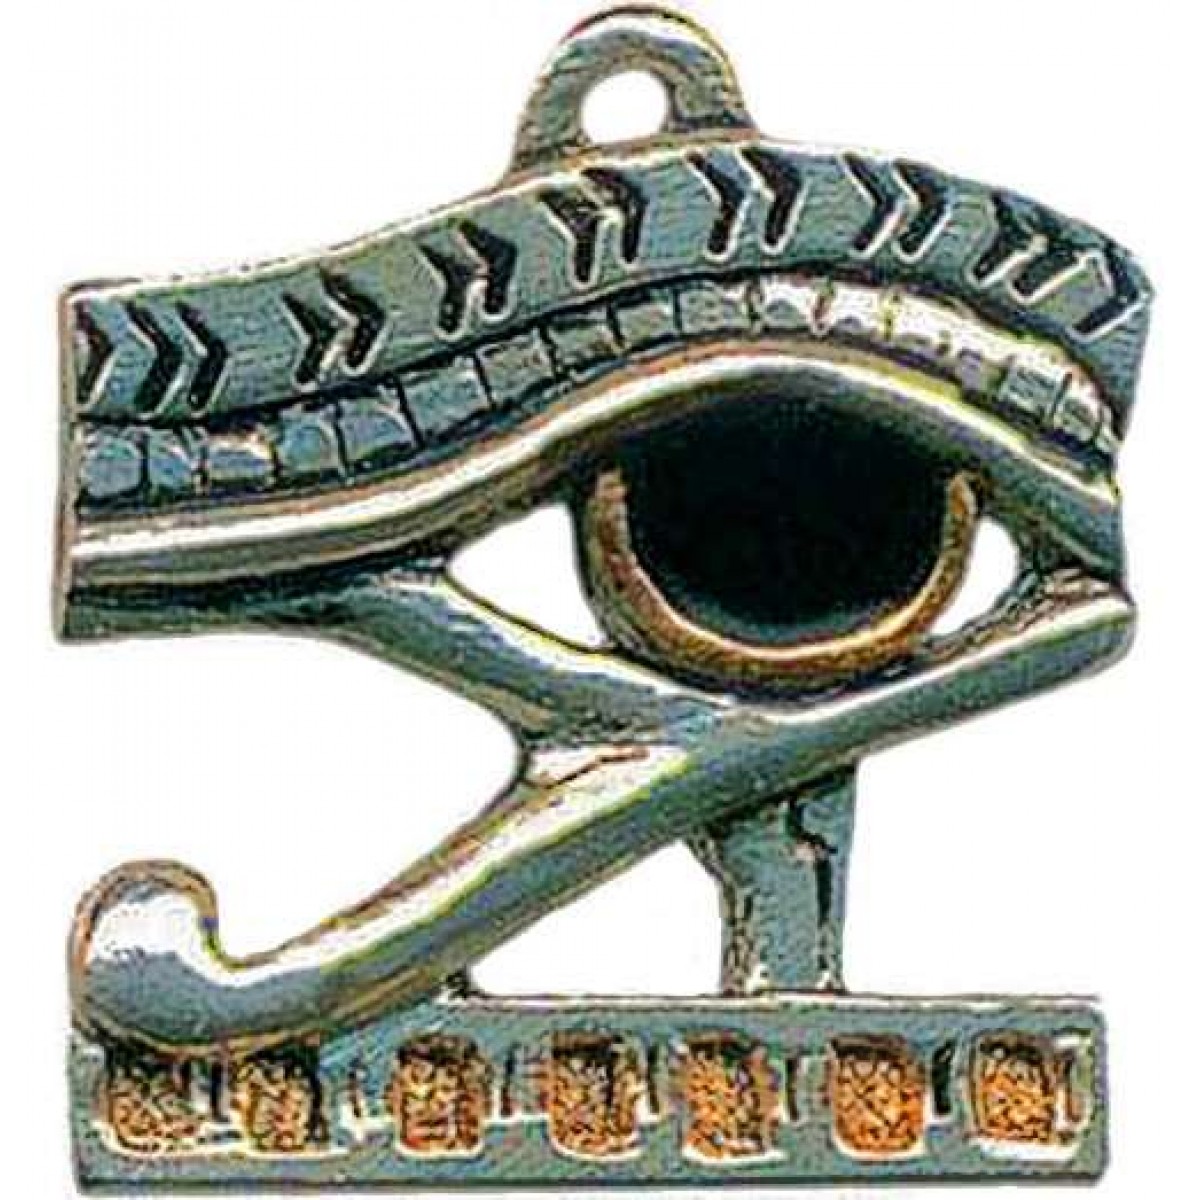 egyptian amulet